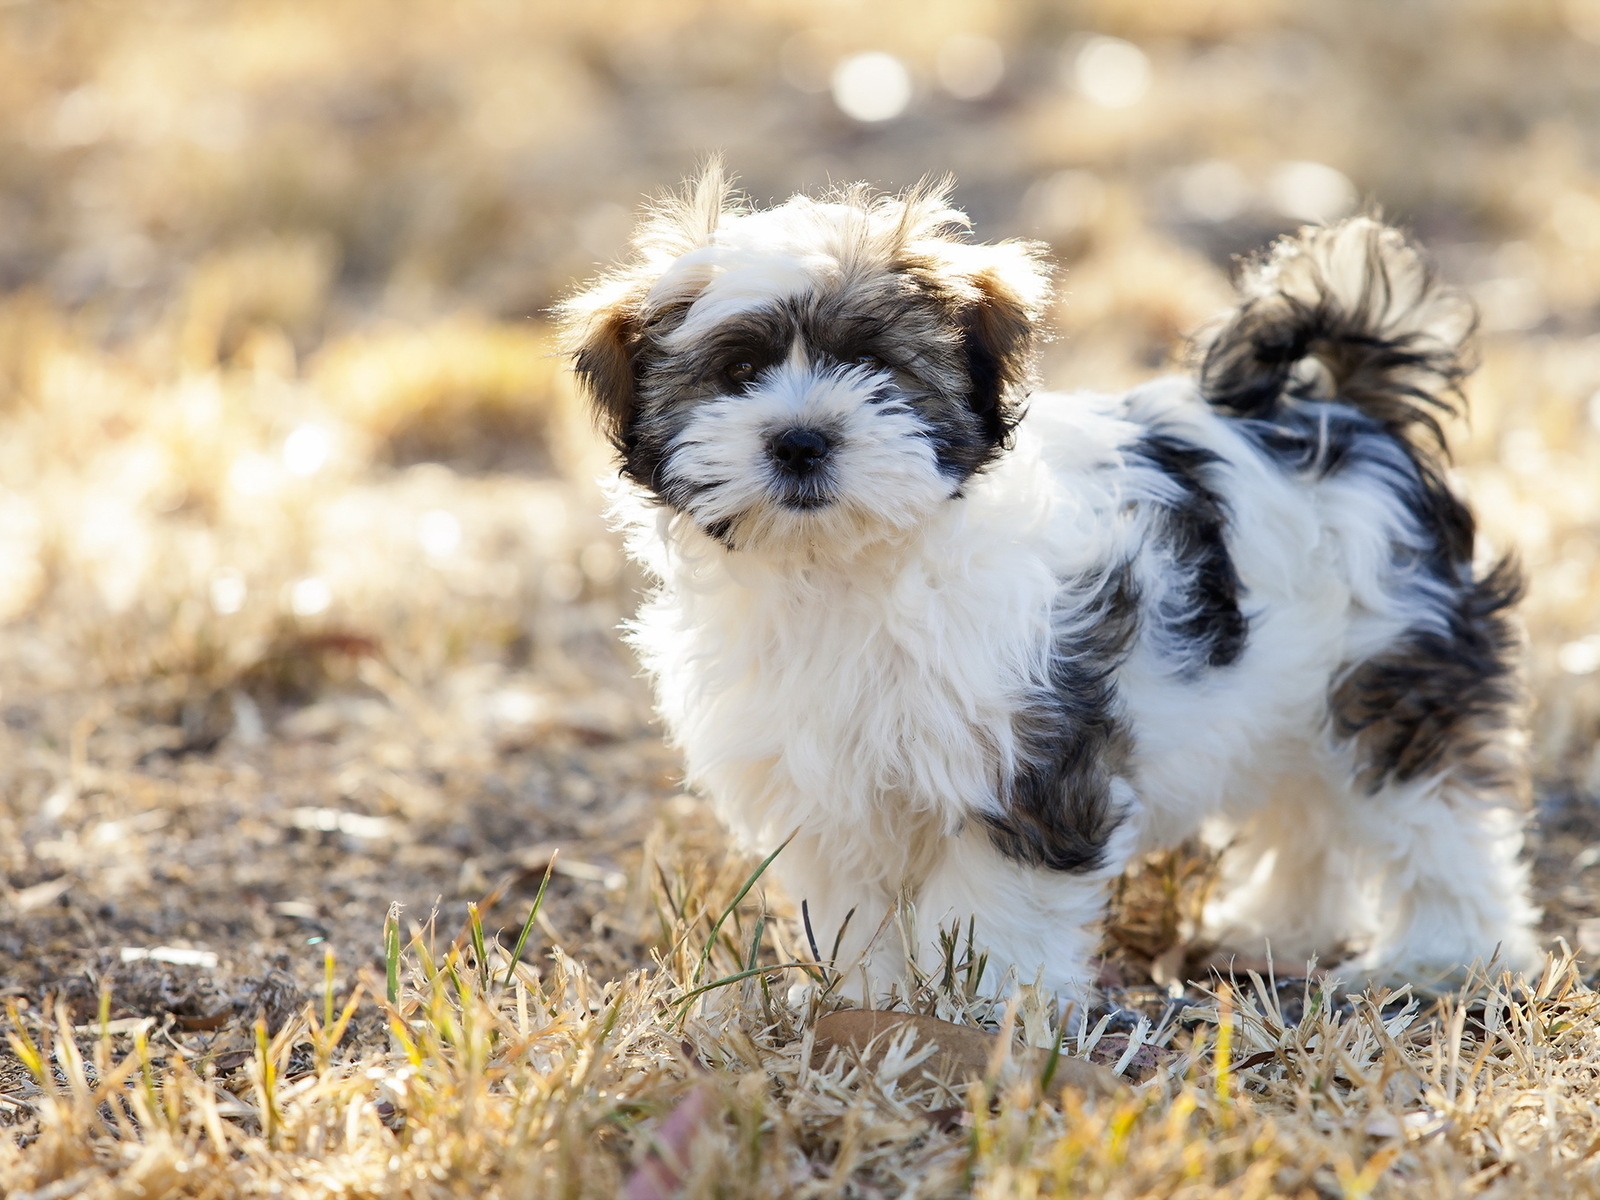 Cute Fluffy Dog for 1600 x 1200 resolution